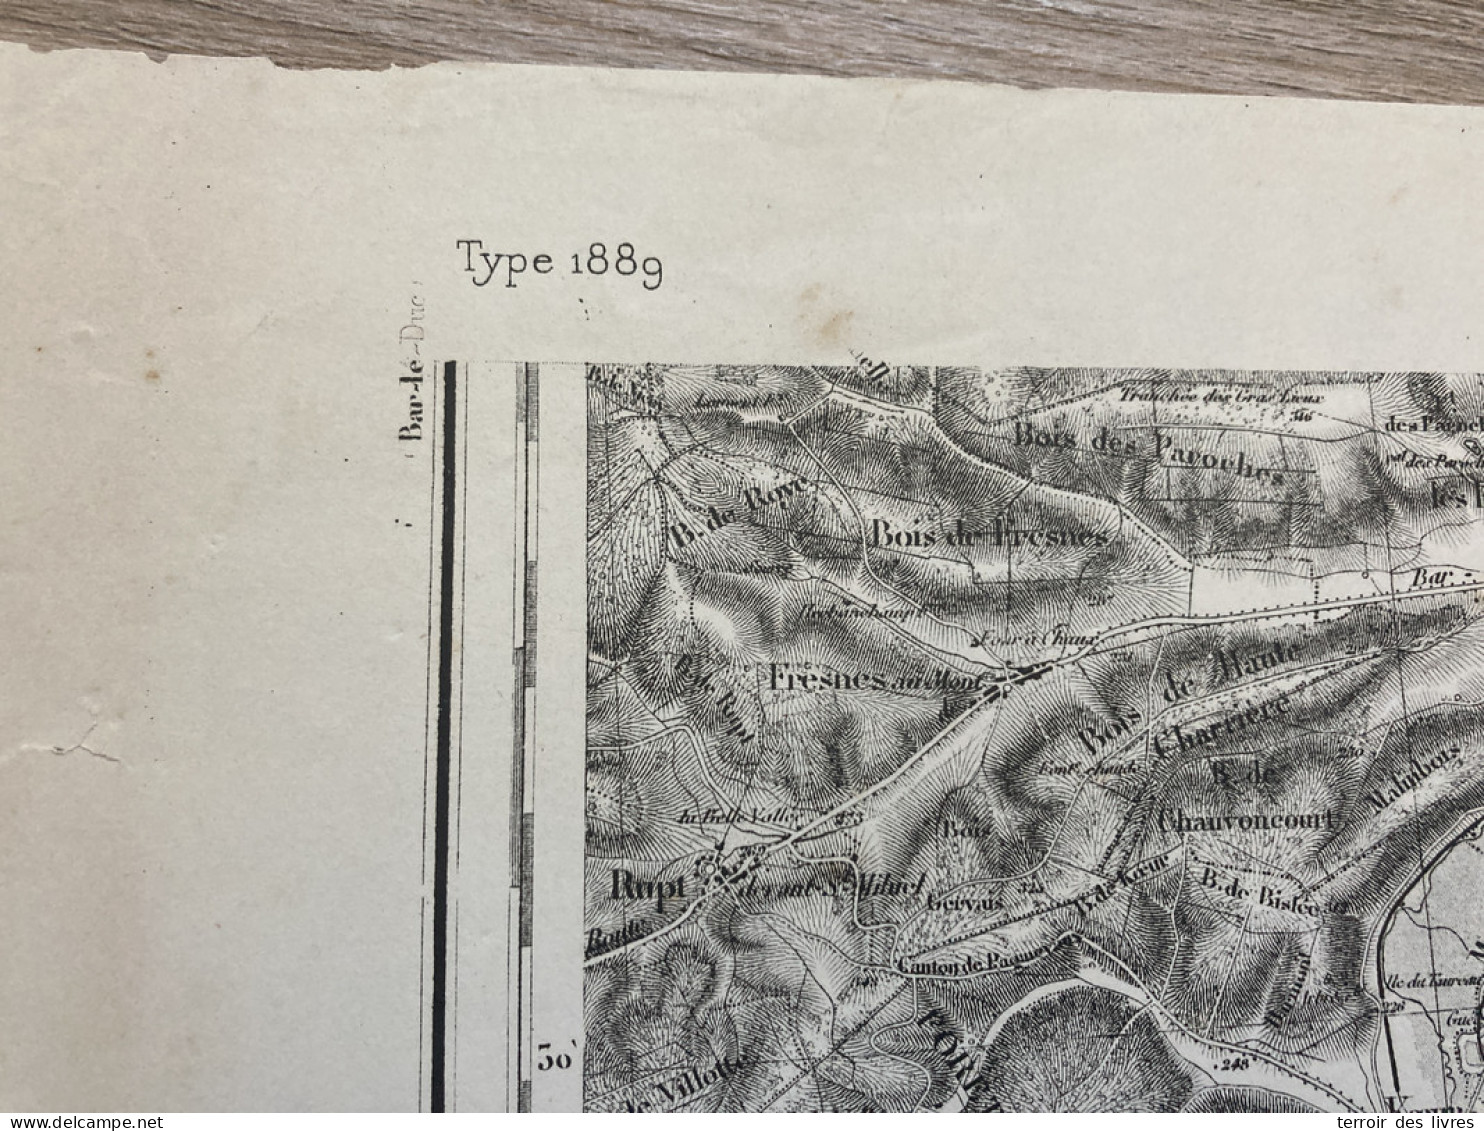 Carte état Major COMMERCY S.O. 1835 1888 33x50cm MARBOTTE APREMONT LA FORET VARNEVILLE LIOUVILLE LOUPMONT MARBOTTE ST-JU - Geographical Maps